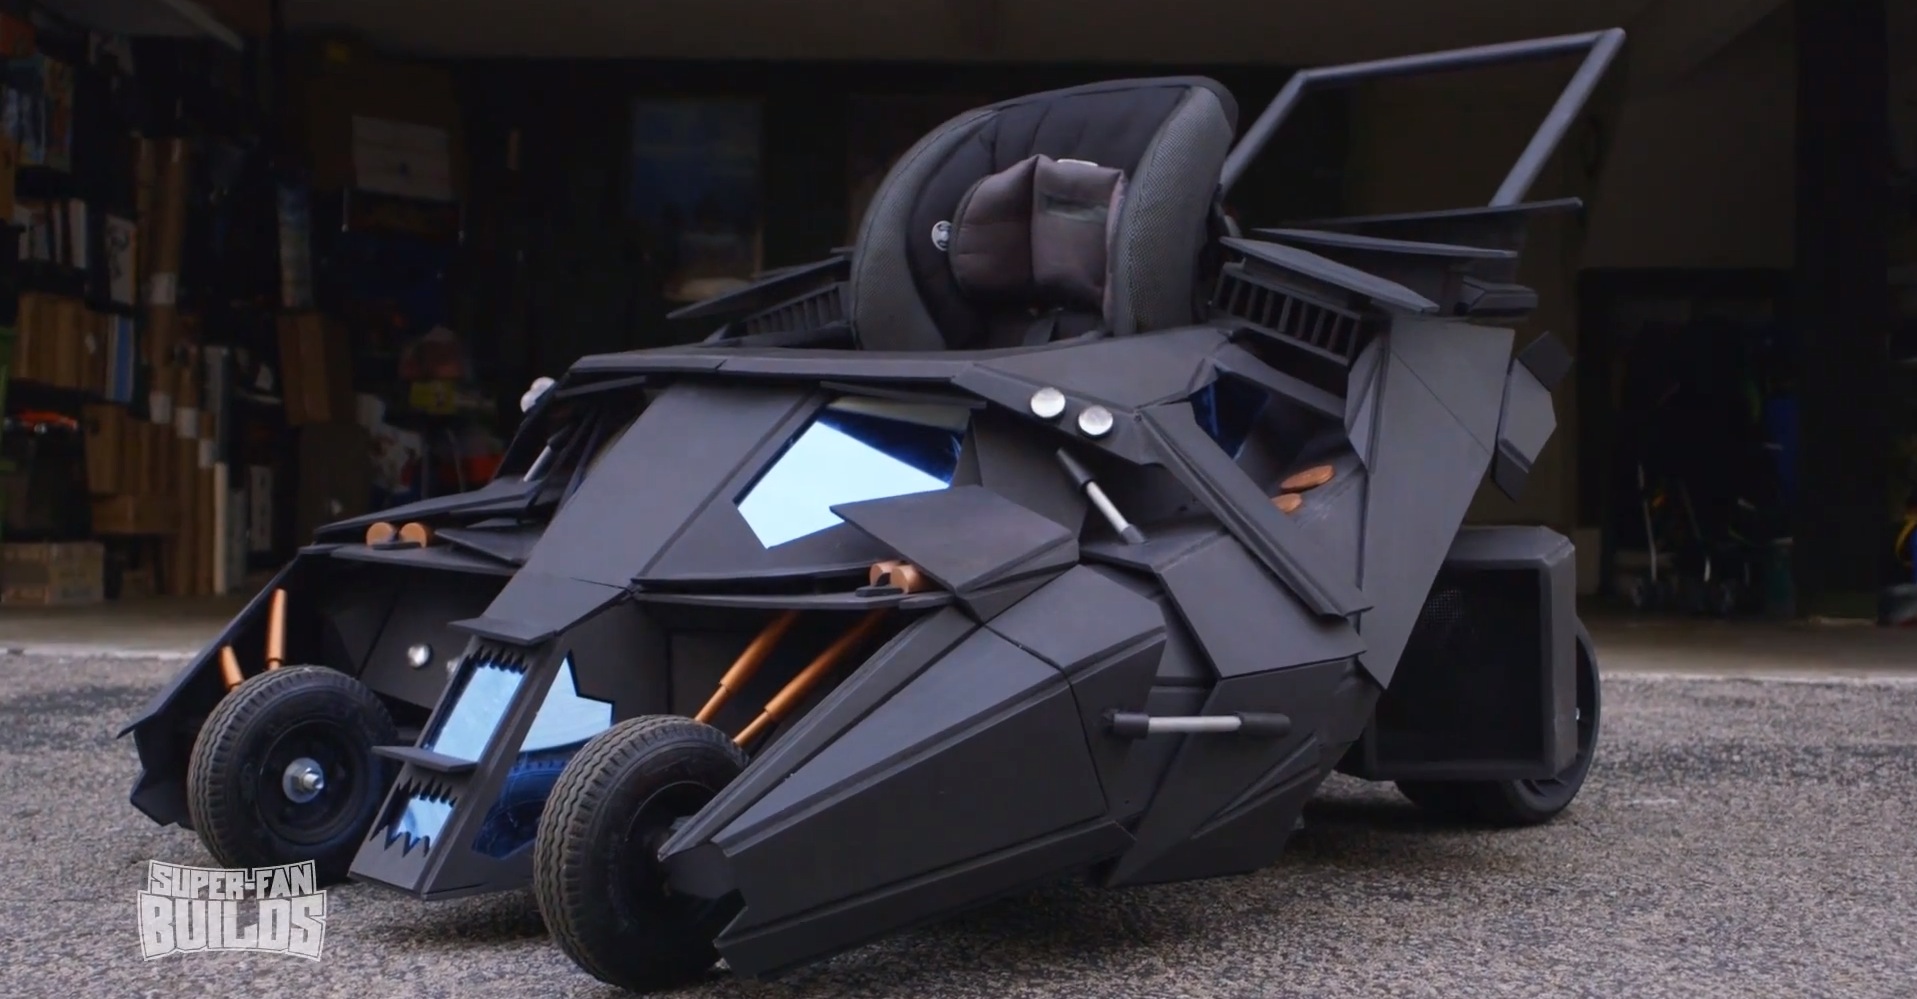 batman-s-tumbler-batmobile-turned-into-baby-stroller-video-91329_1.jpg